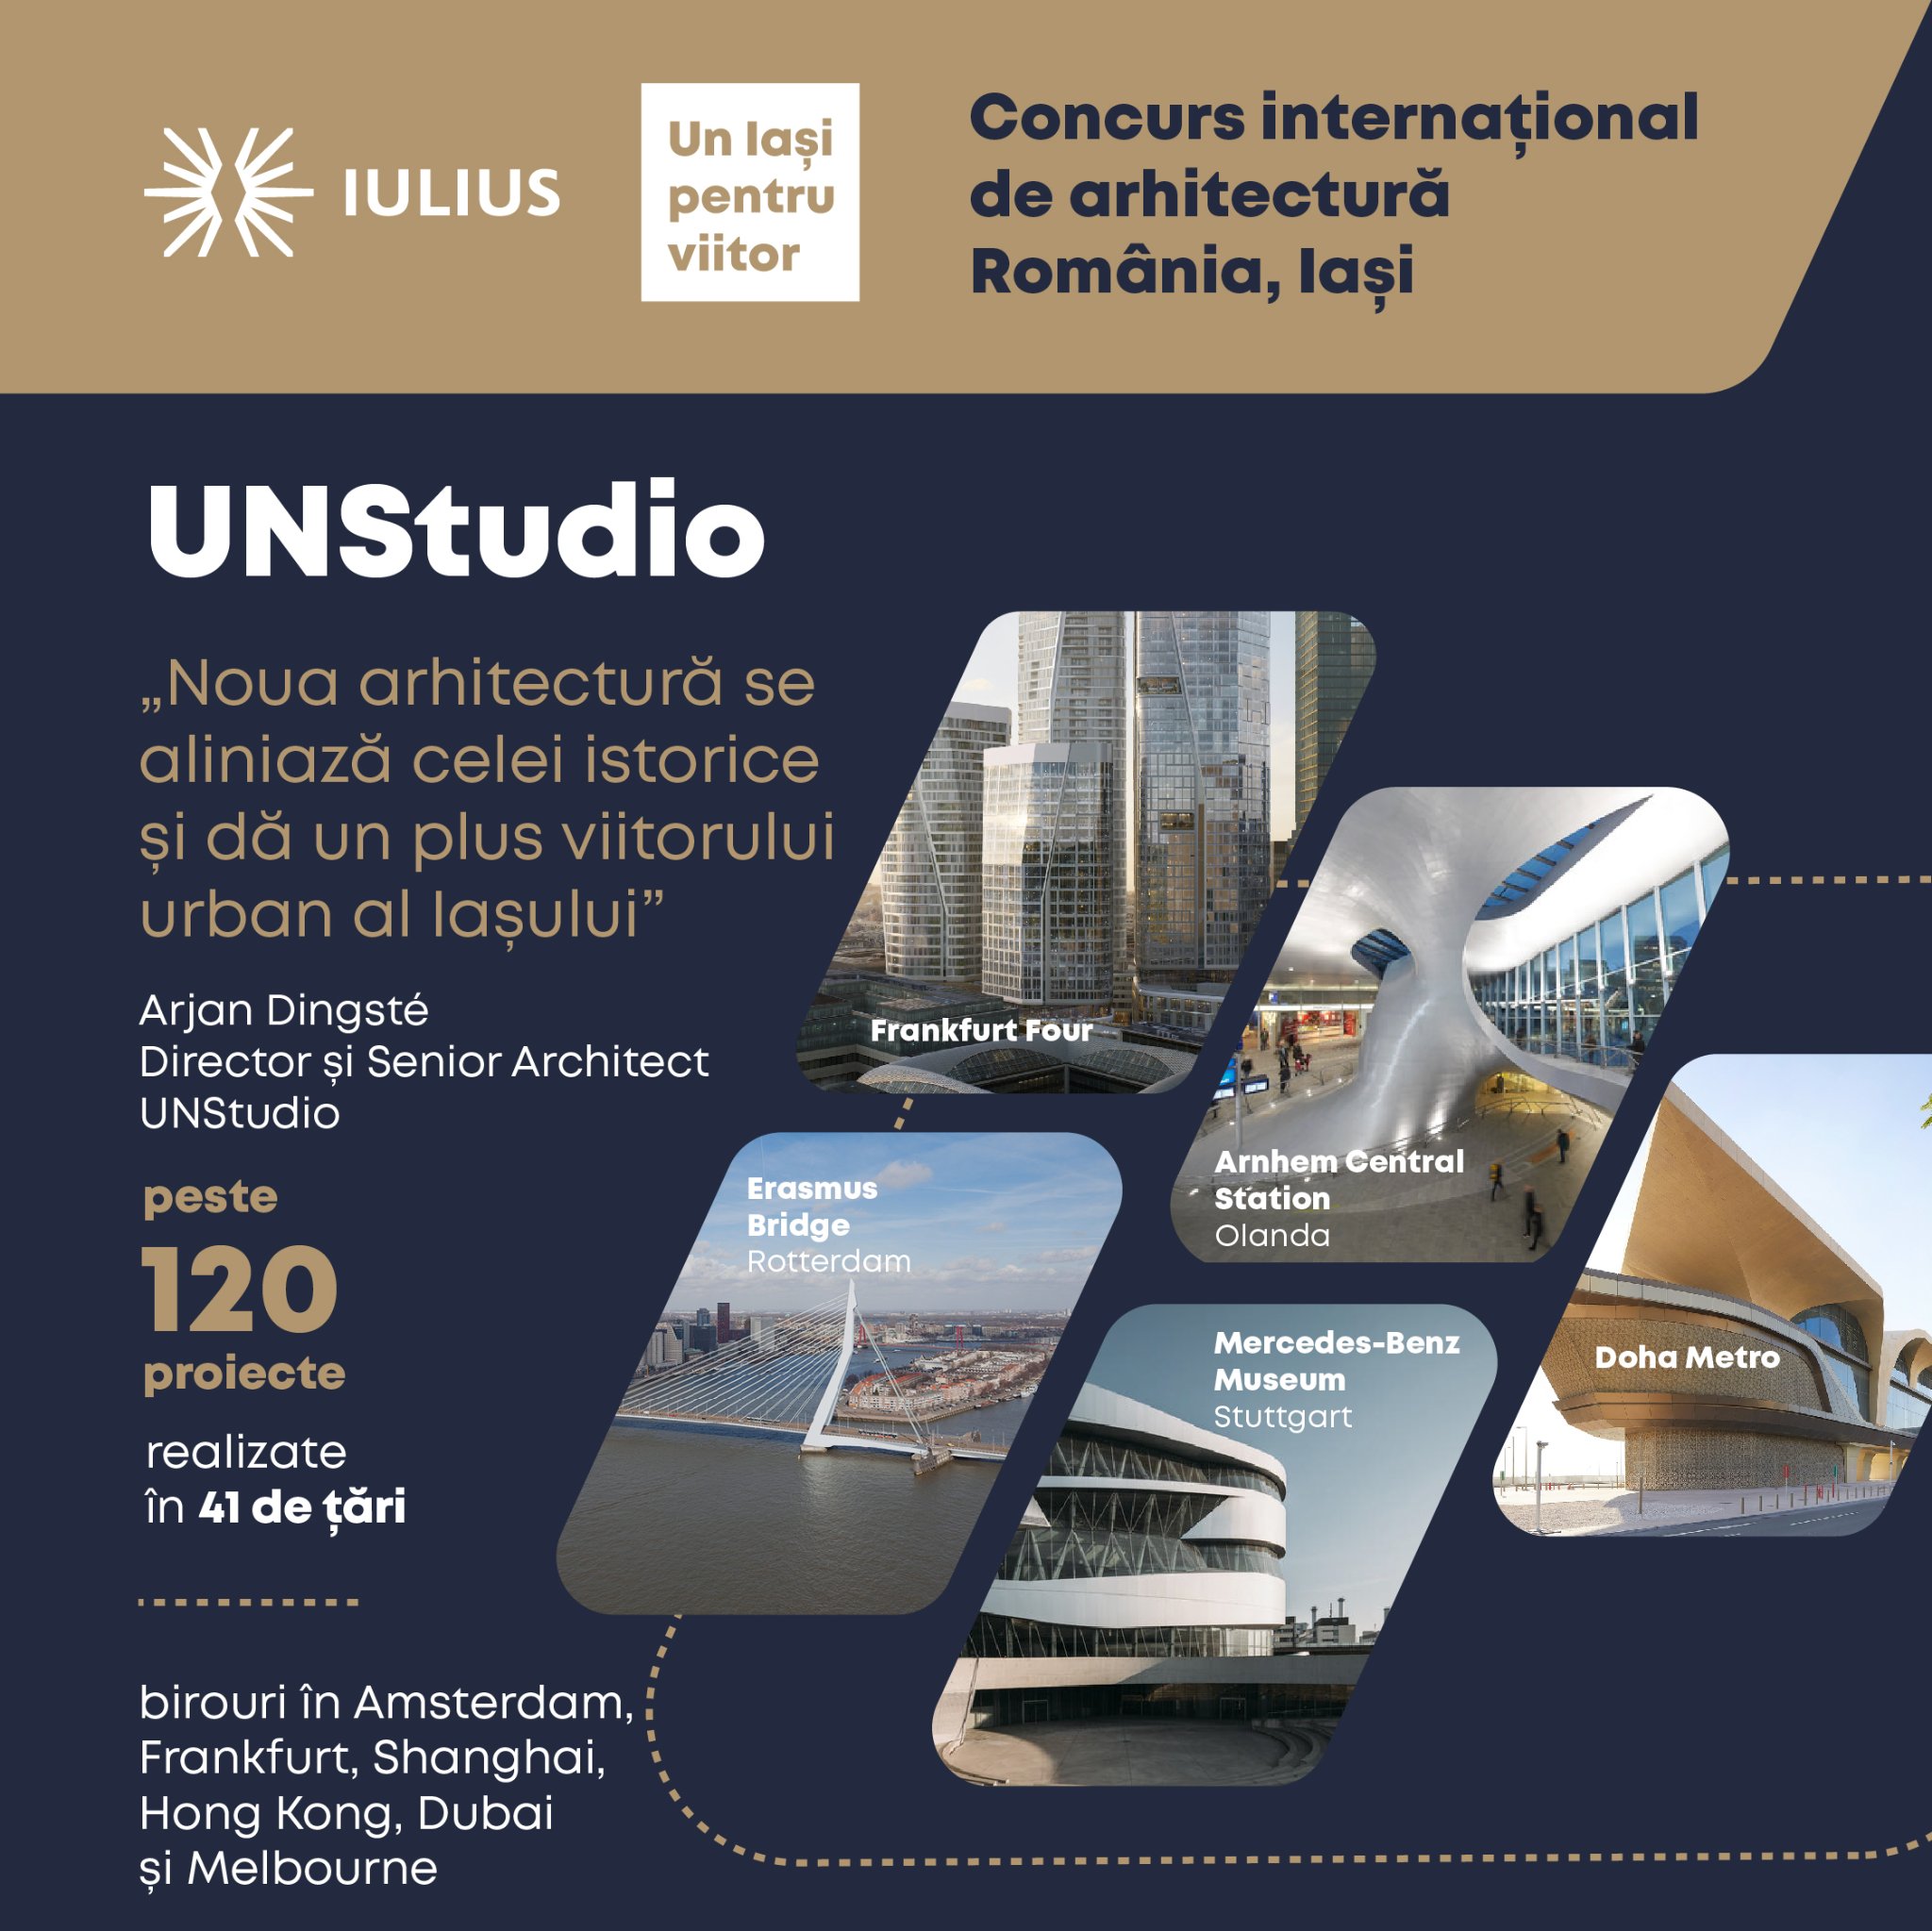 Video - UNStudio la concursul internațional de arhitectură organizat de Iulius, la Iași